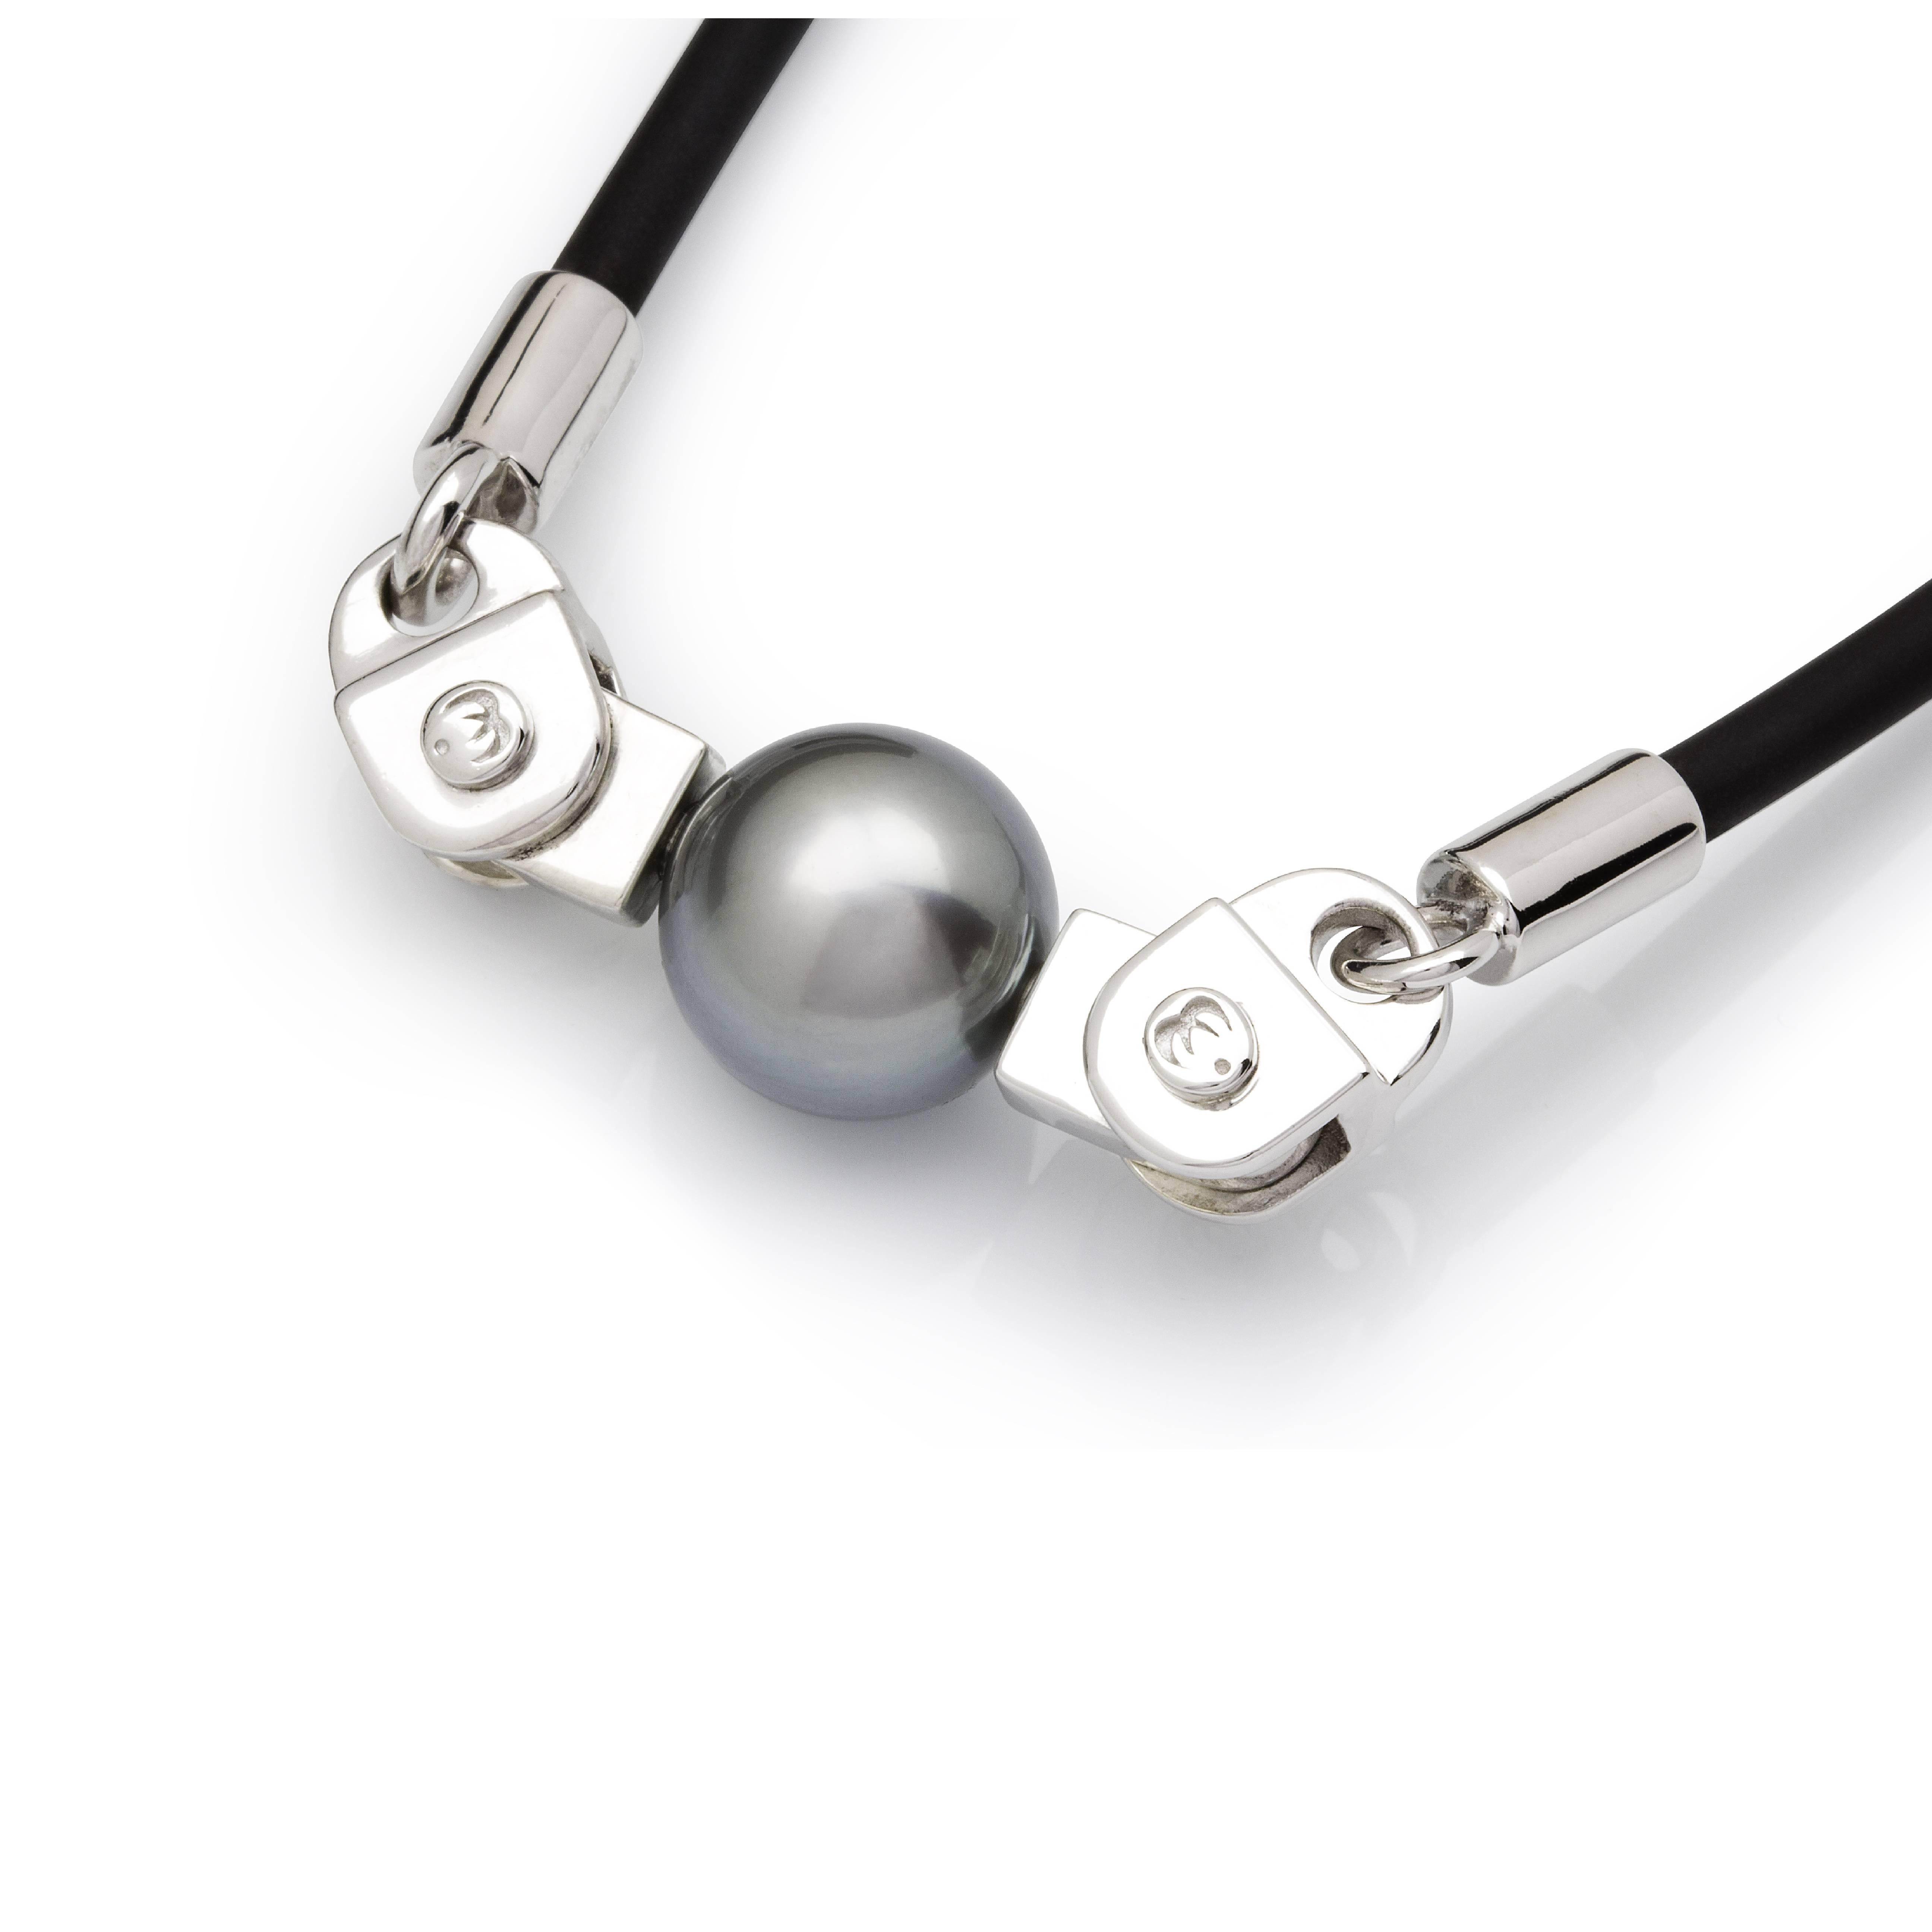 Lust Pearls unique design - BOLT

